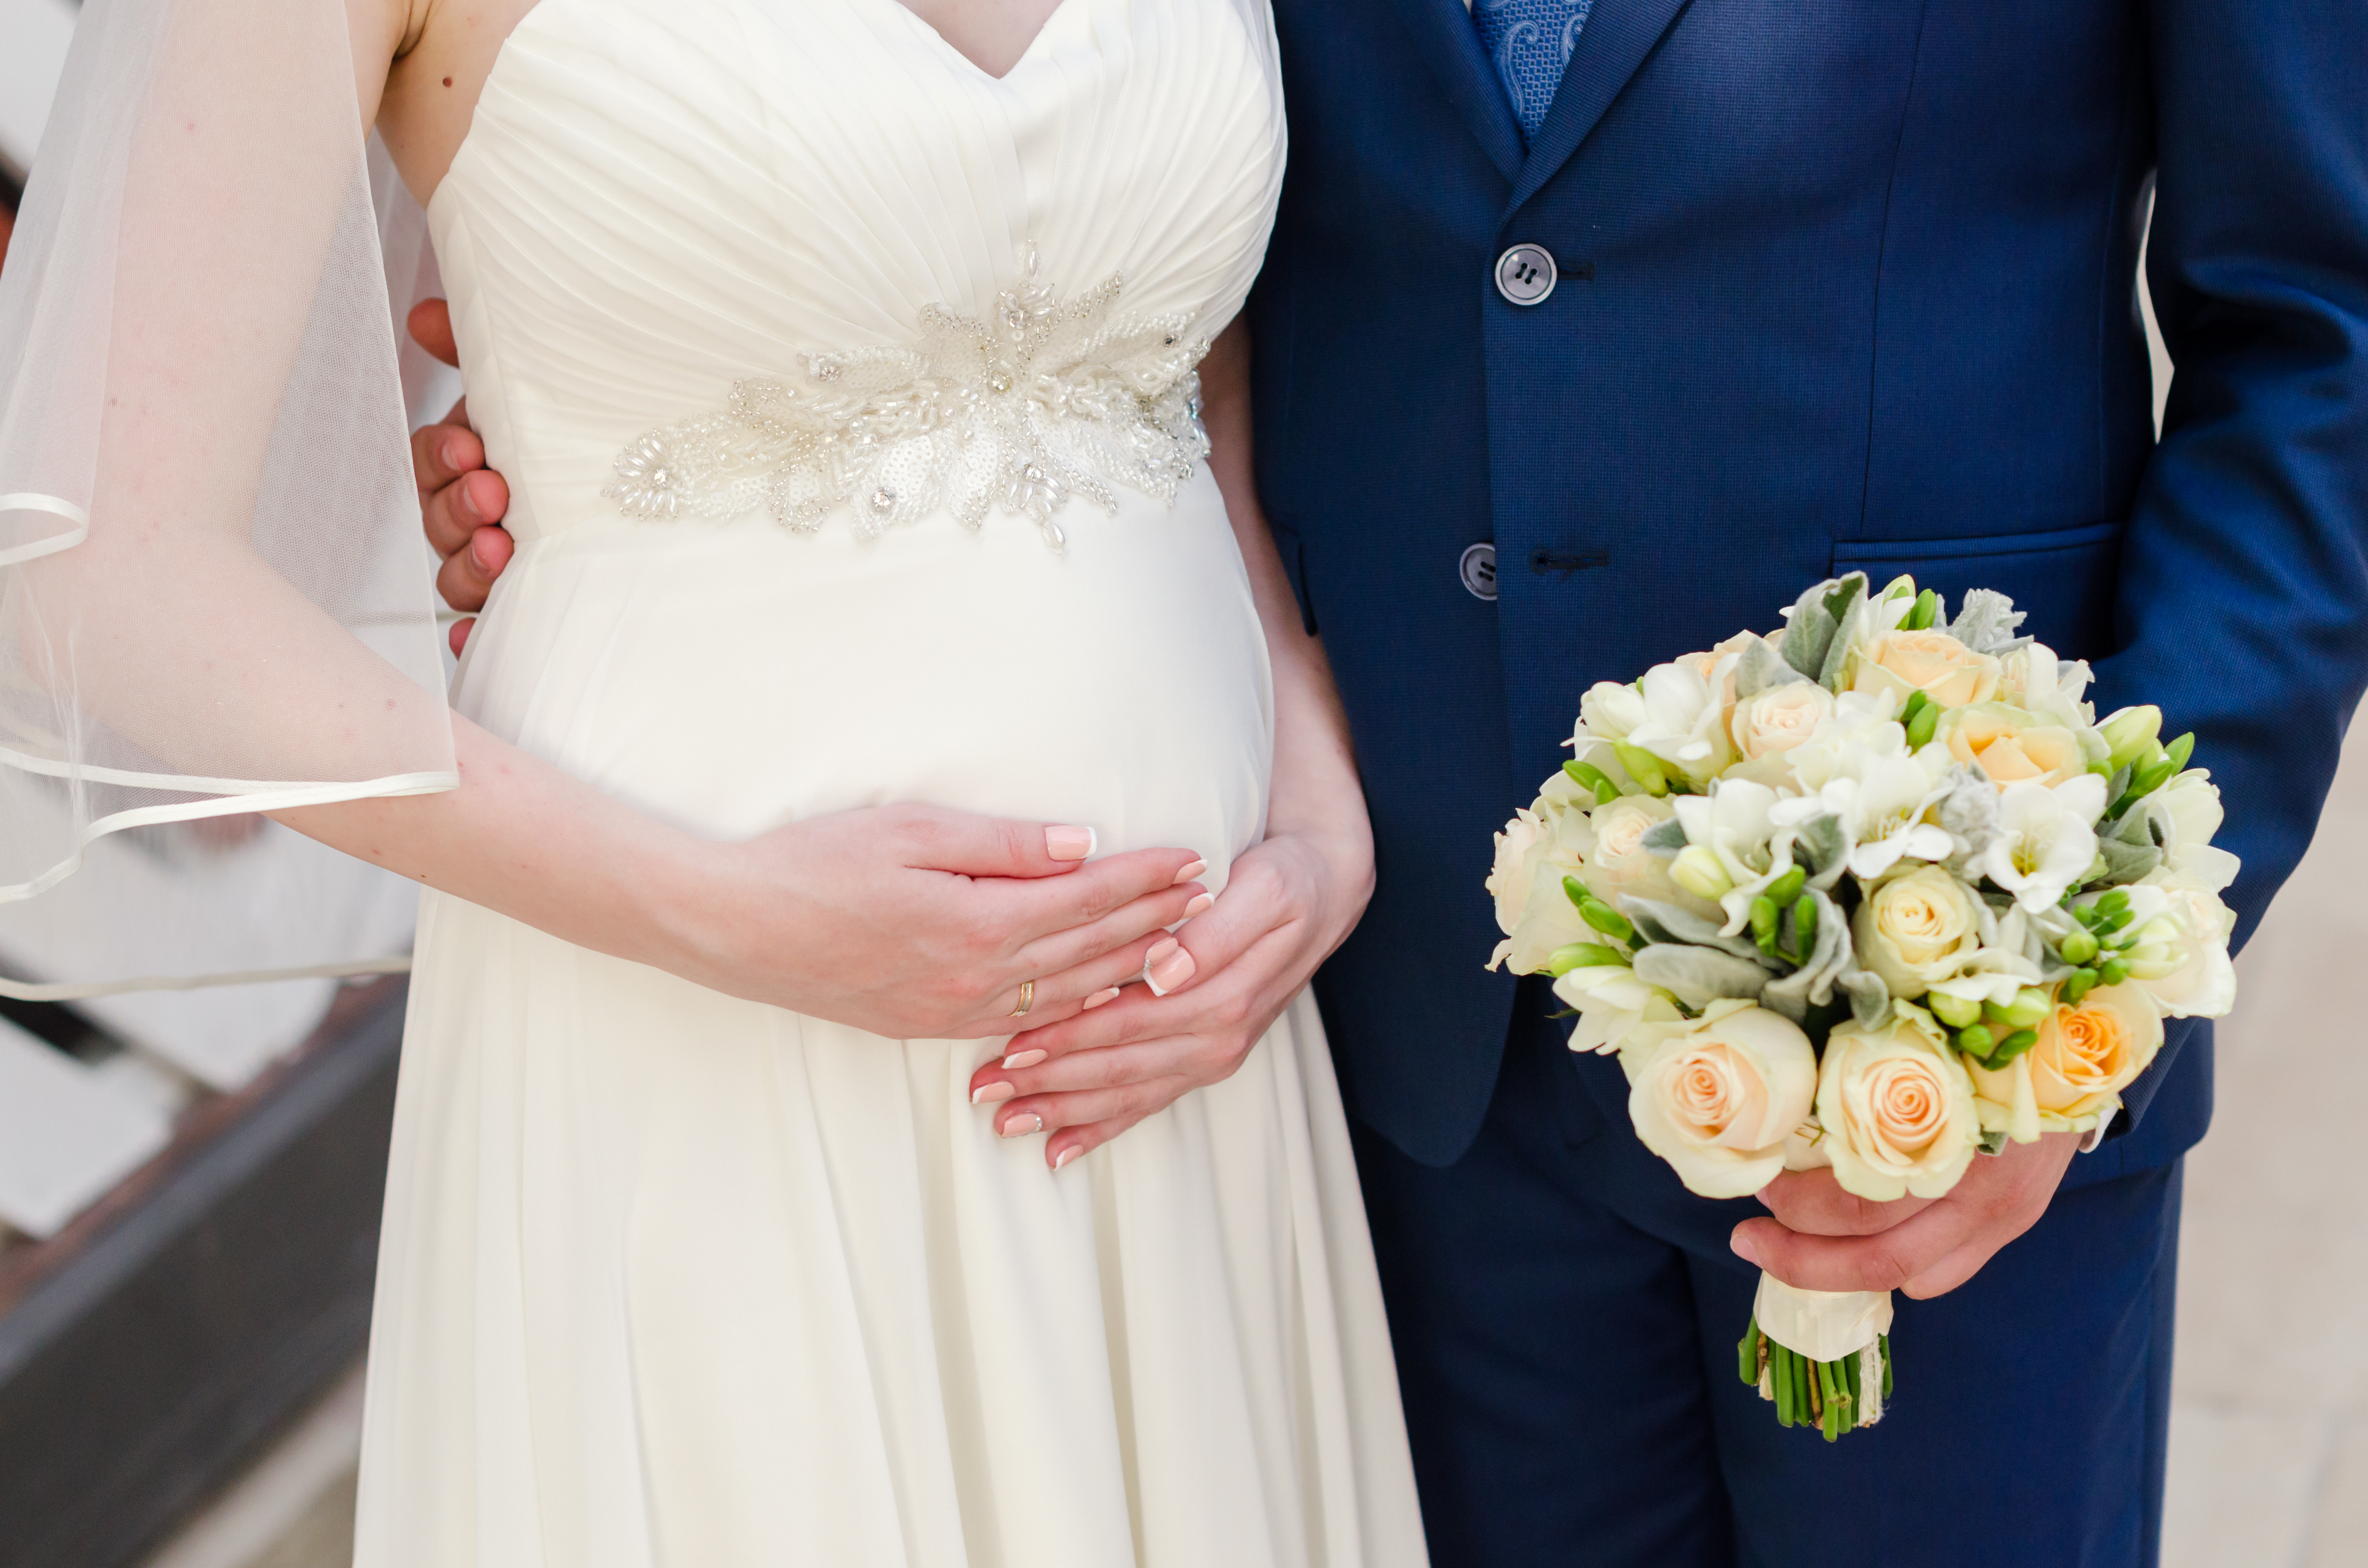 Una novia embarazada se sujeta el vientre mientras su novio le sostiene el ramo. | Foto: Shutterstock